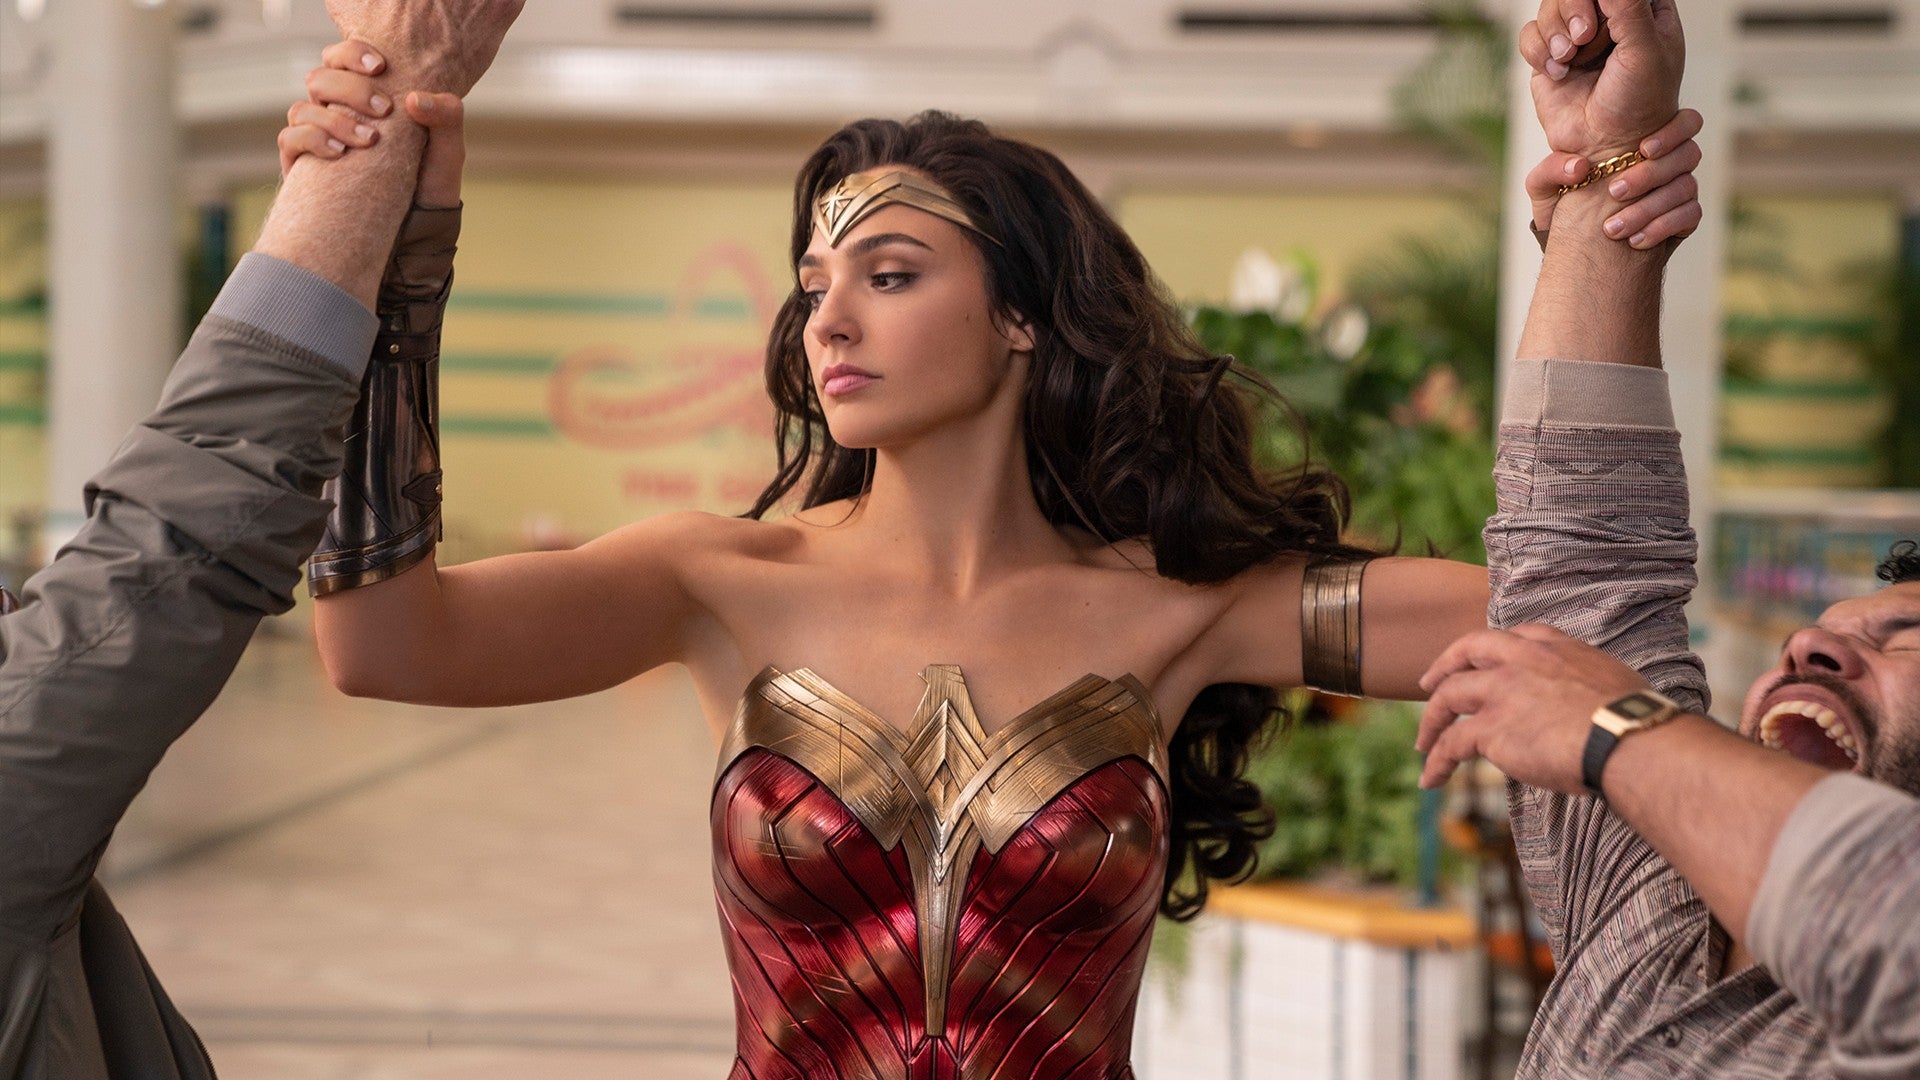 Bom tấn "Wonder Woman 1984" sẽ ra mắt phim vào tháng 10 - 2